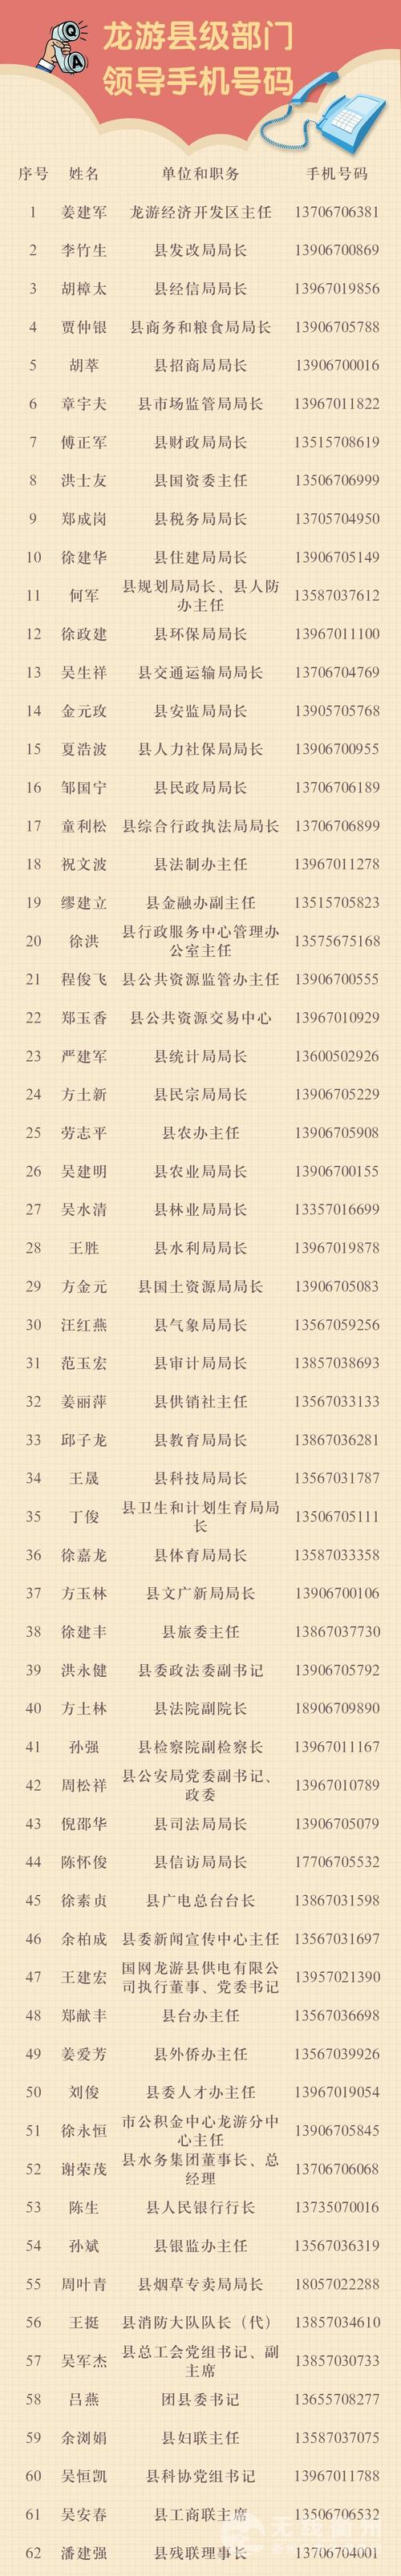 衢州5地公布县(区)级部门领导手机号码